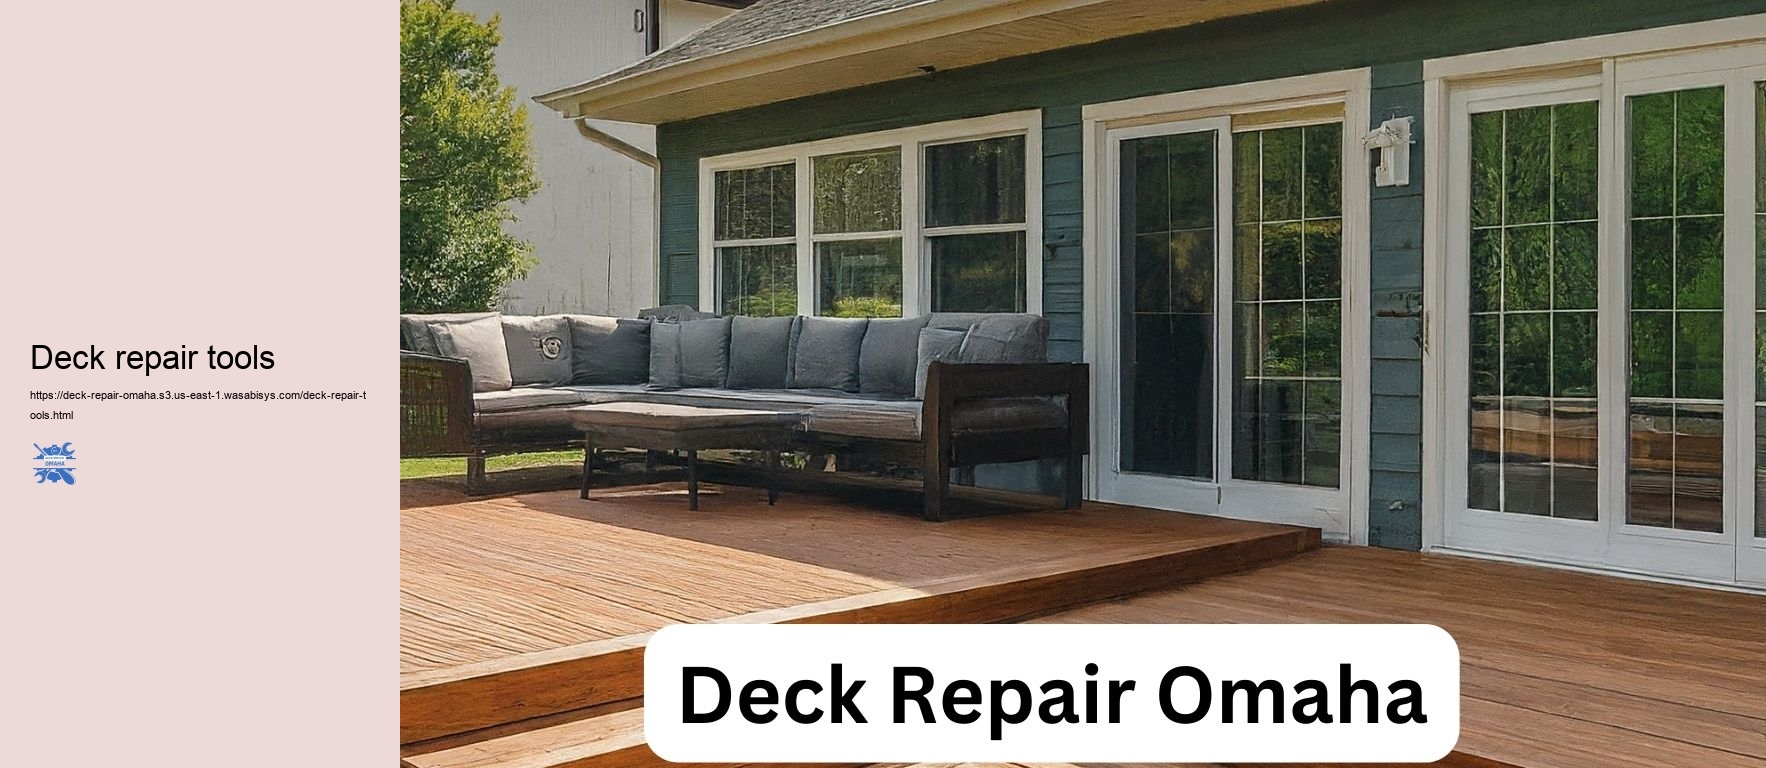 Deck repair tools